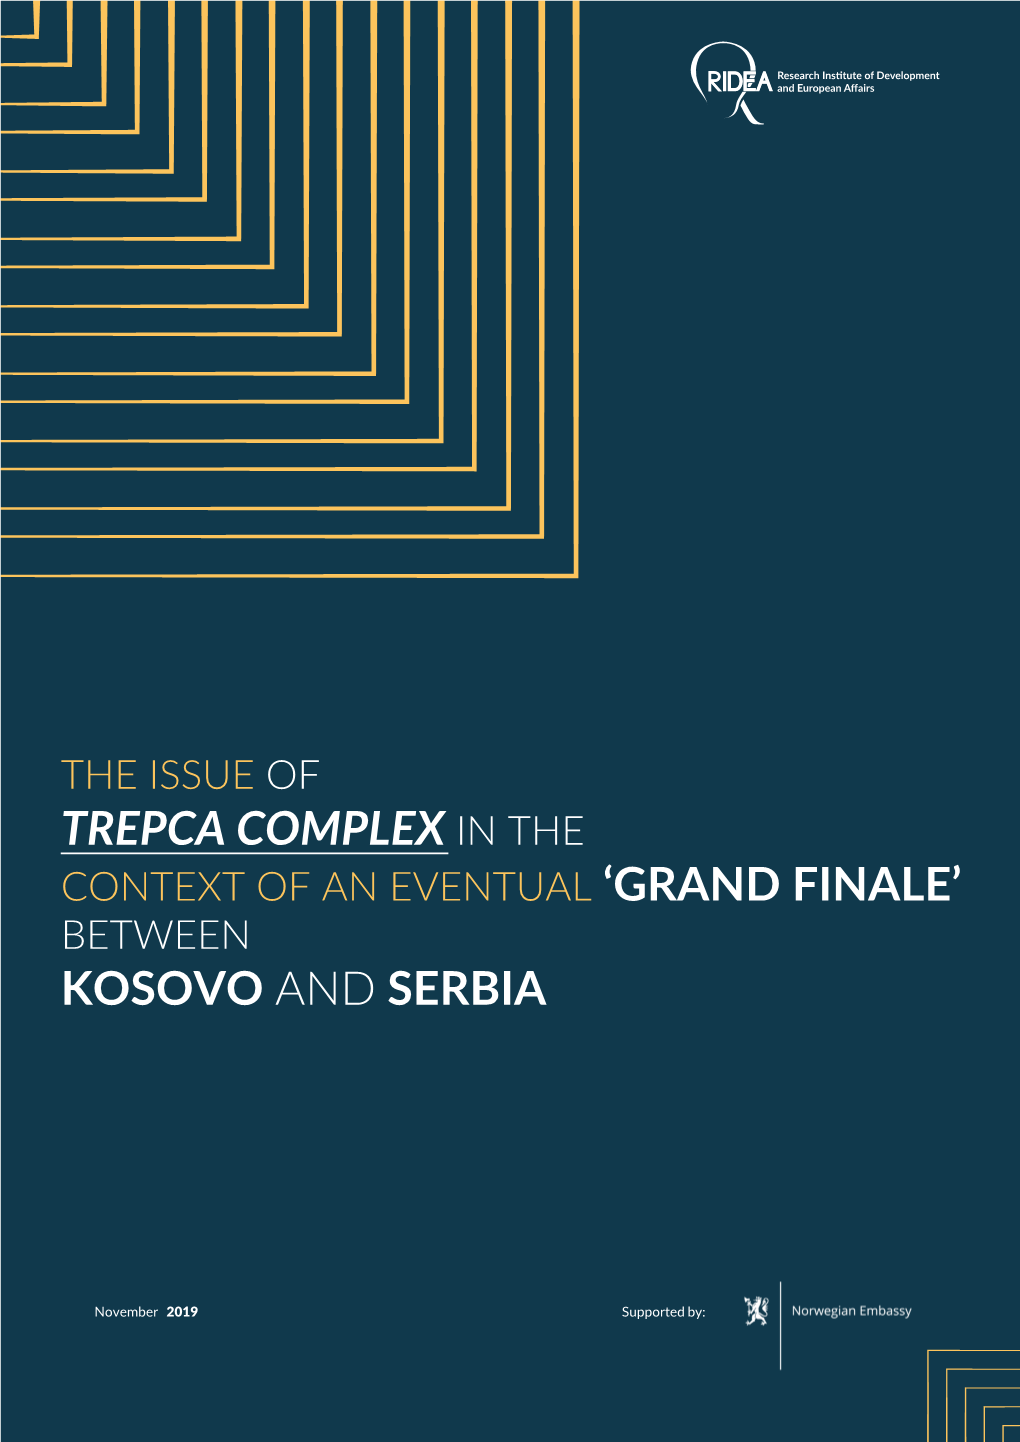 Trepca Complex in the Kosovo and Serbia